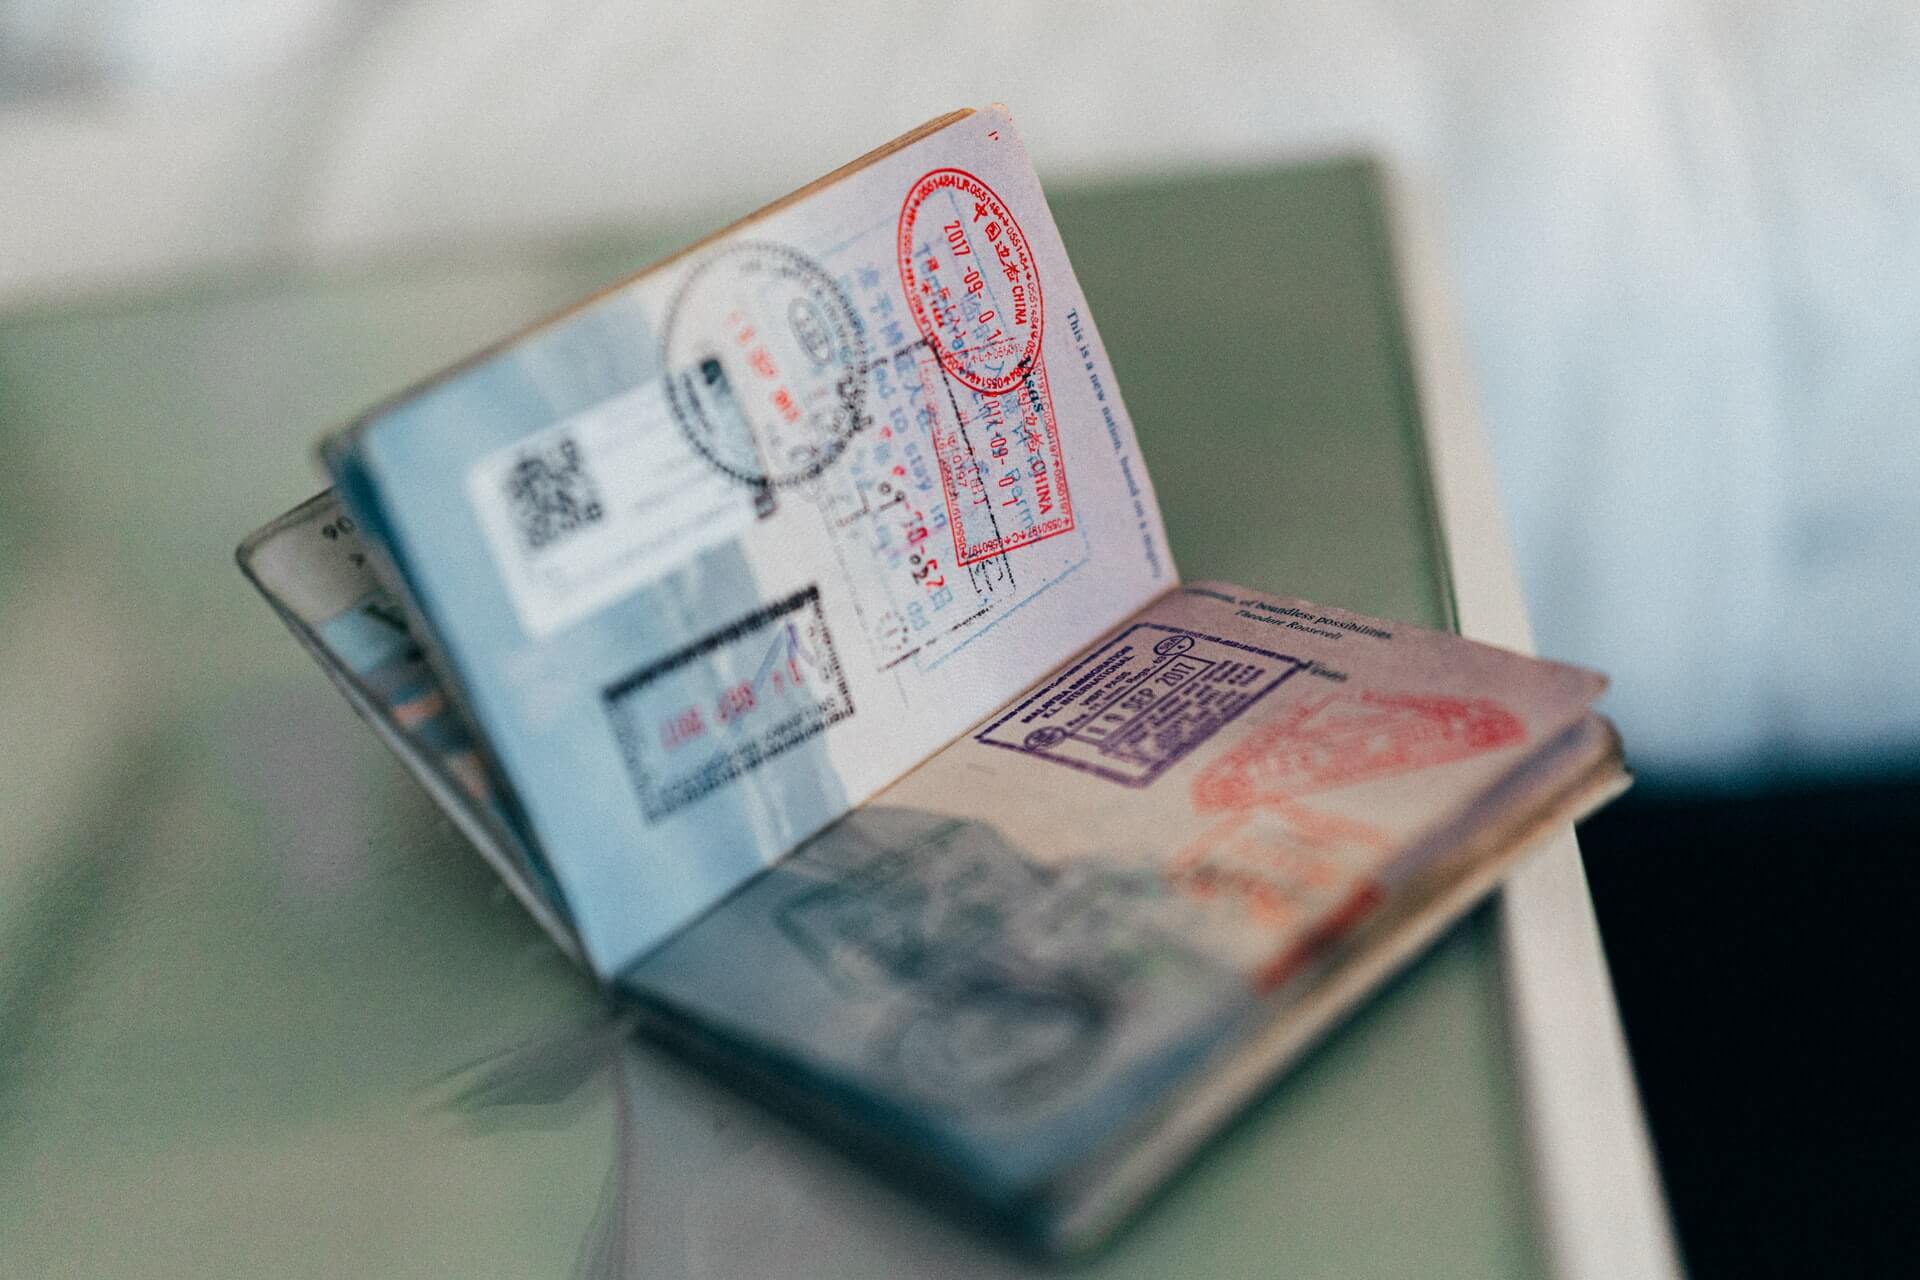 عصابات تروج لـ "جوازات سفر بريطانية مزورة" عبر السوشيال ميديا!